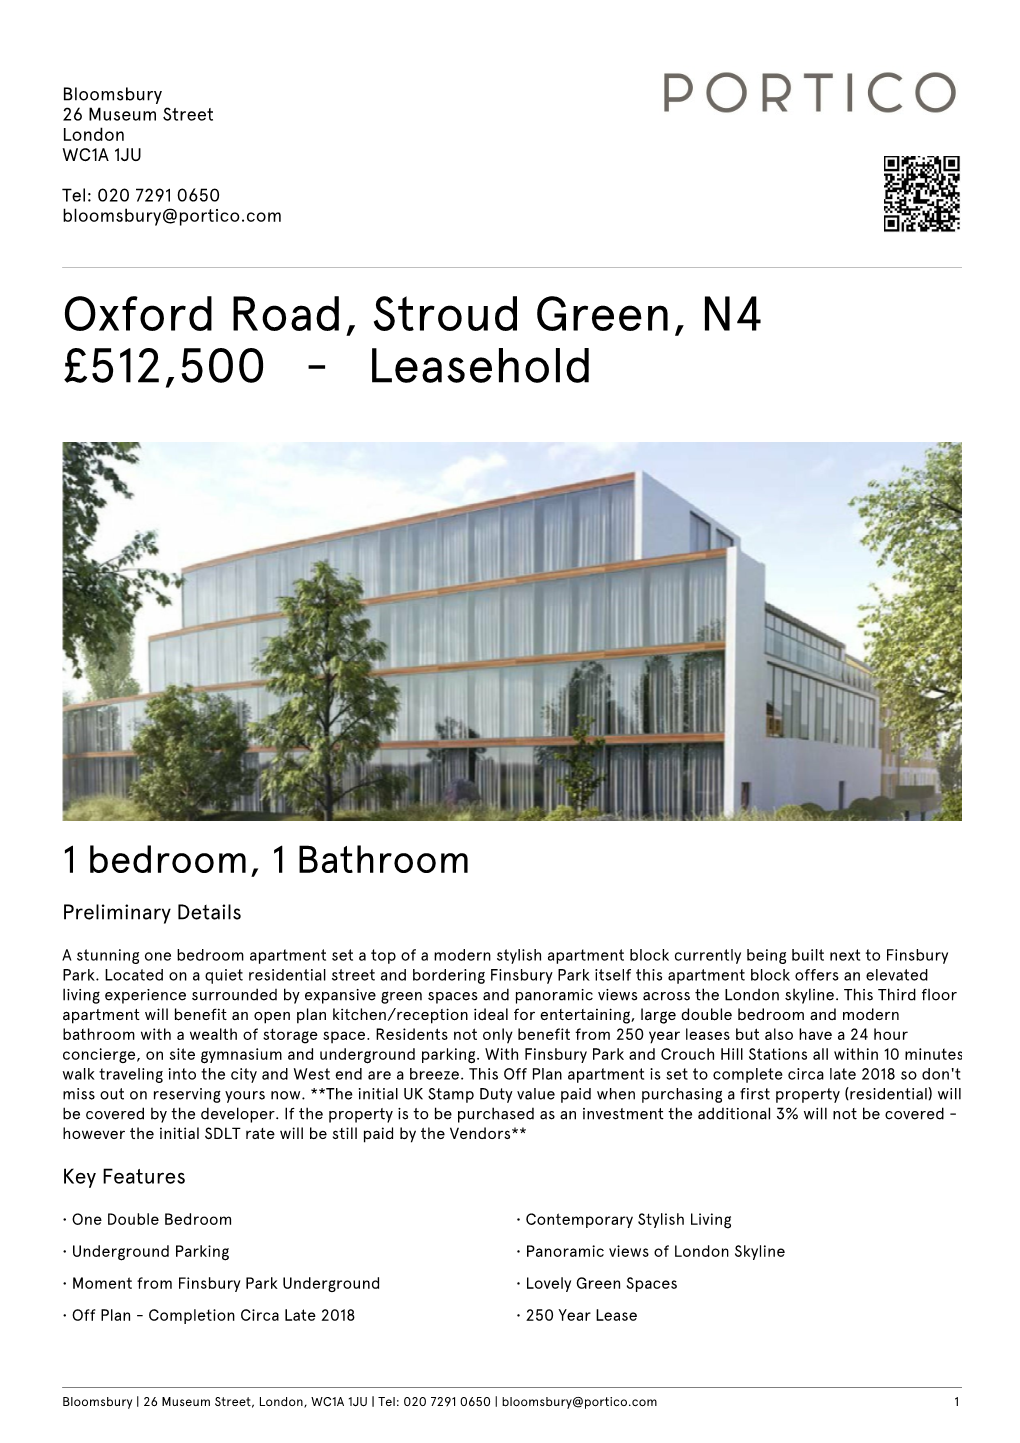 Oxford Road, Stroud Green, N4 £512500